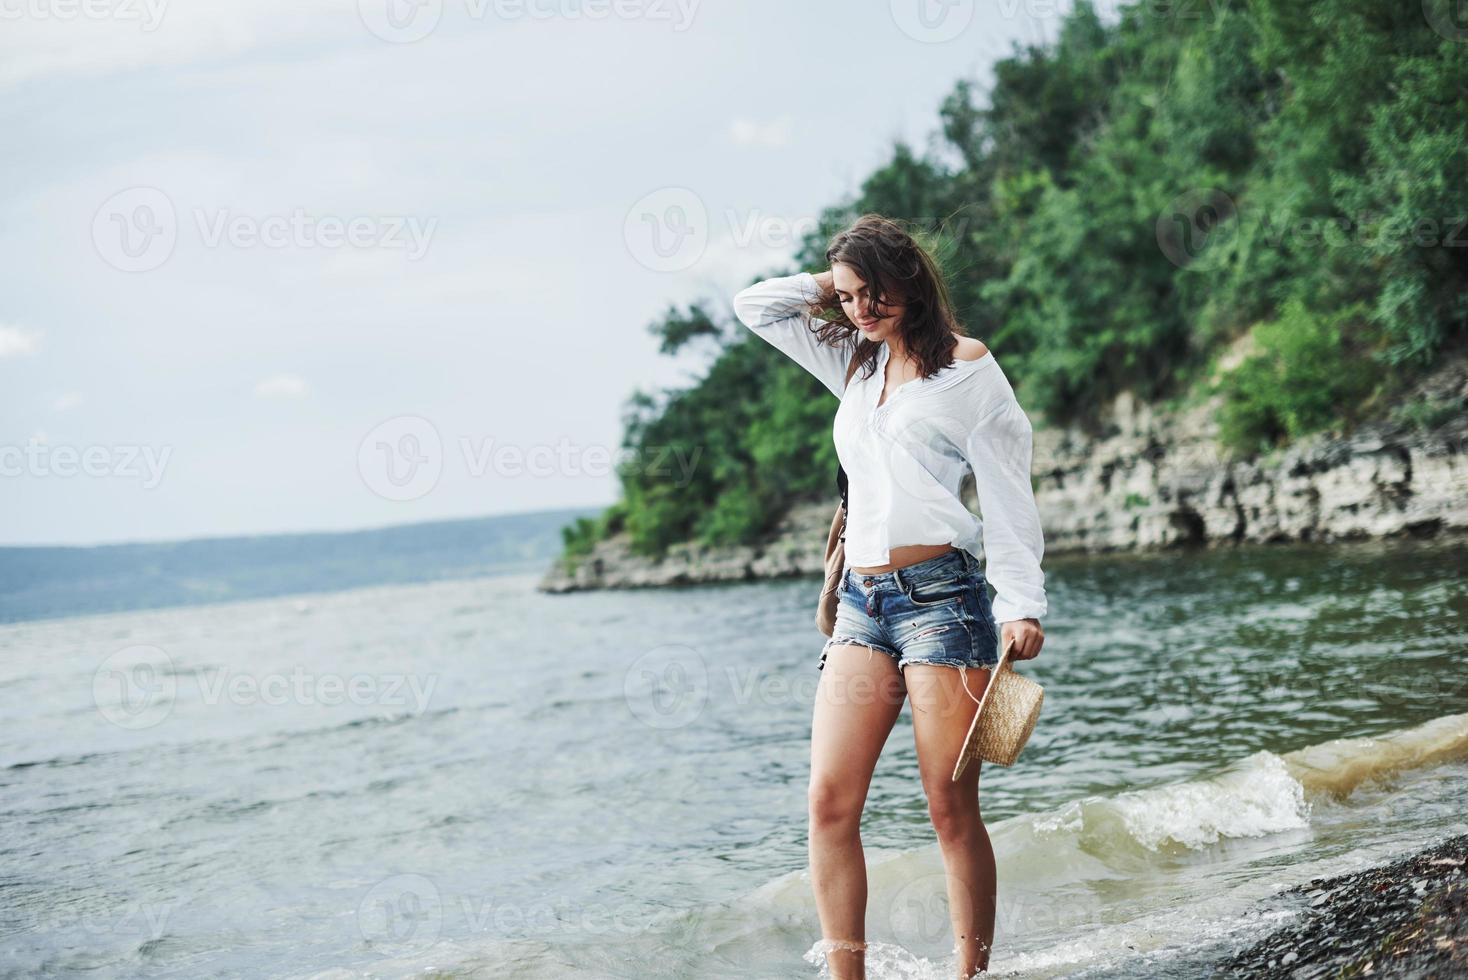 mirada pensativa. Hermosa chica modelo posando en la playa con fondo de acantilado con árboles foto